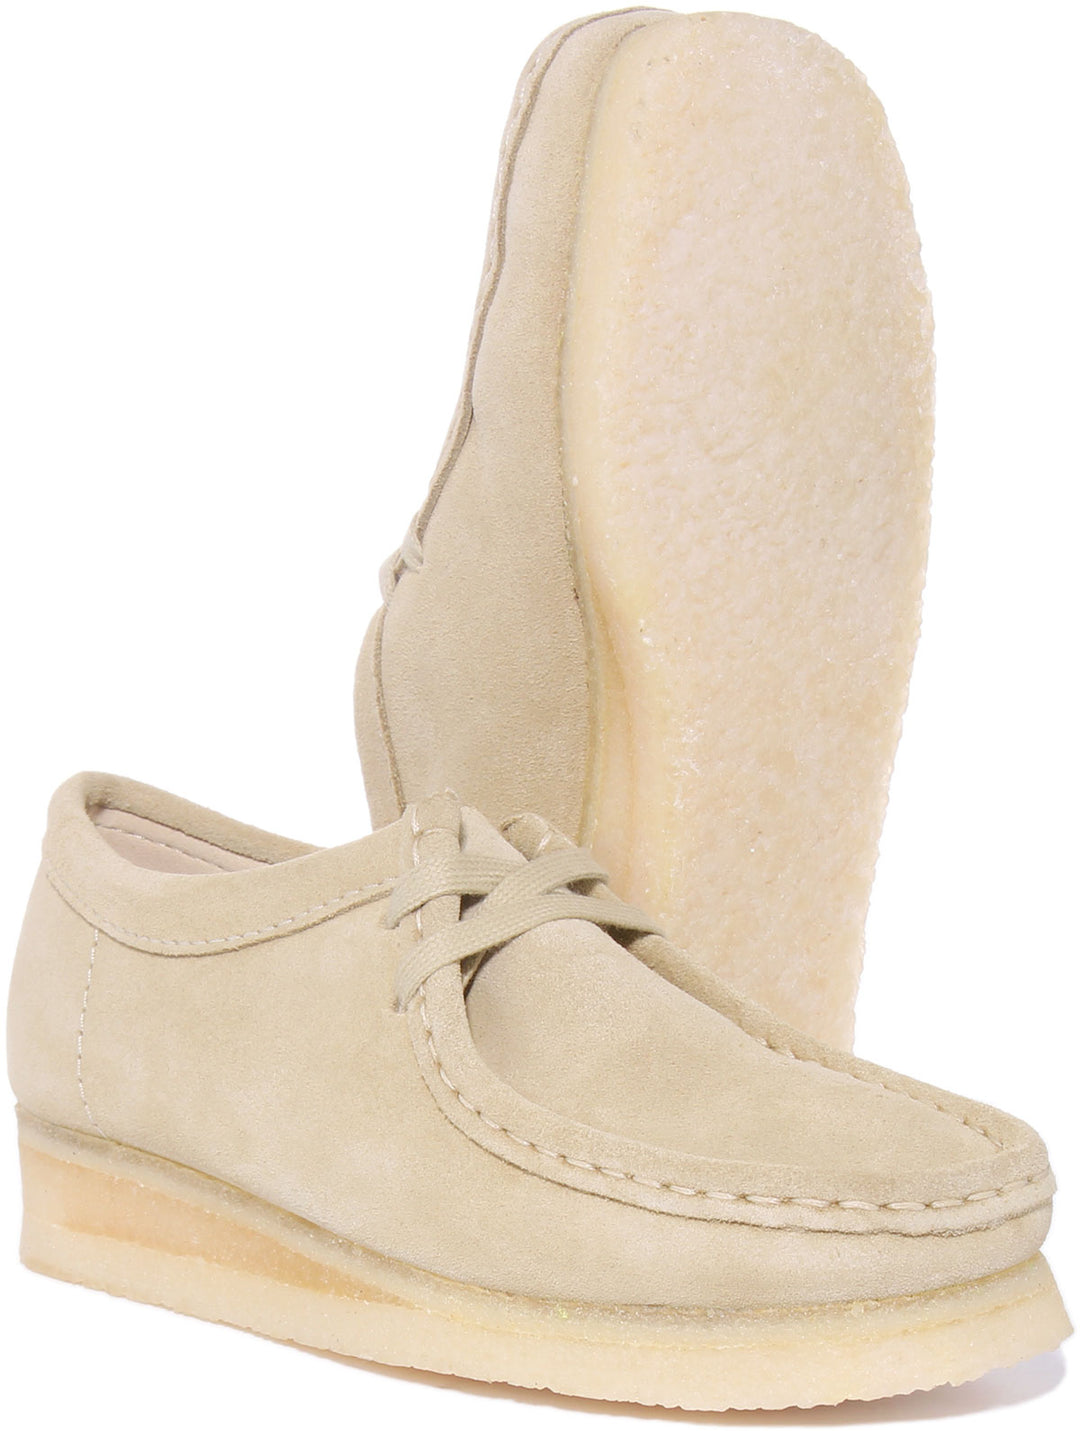 Clarks Originals Wallabee Zapatos con cordones de ante para mujer en beige